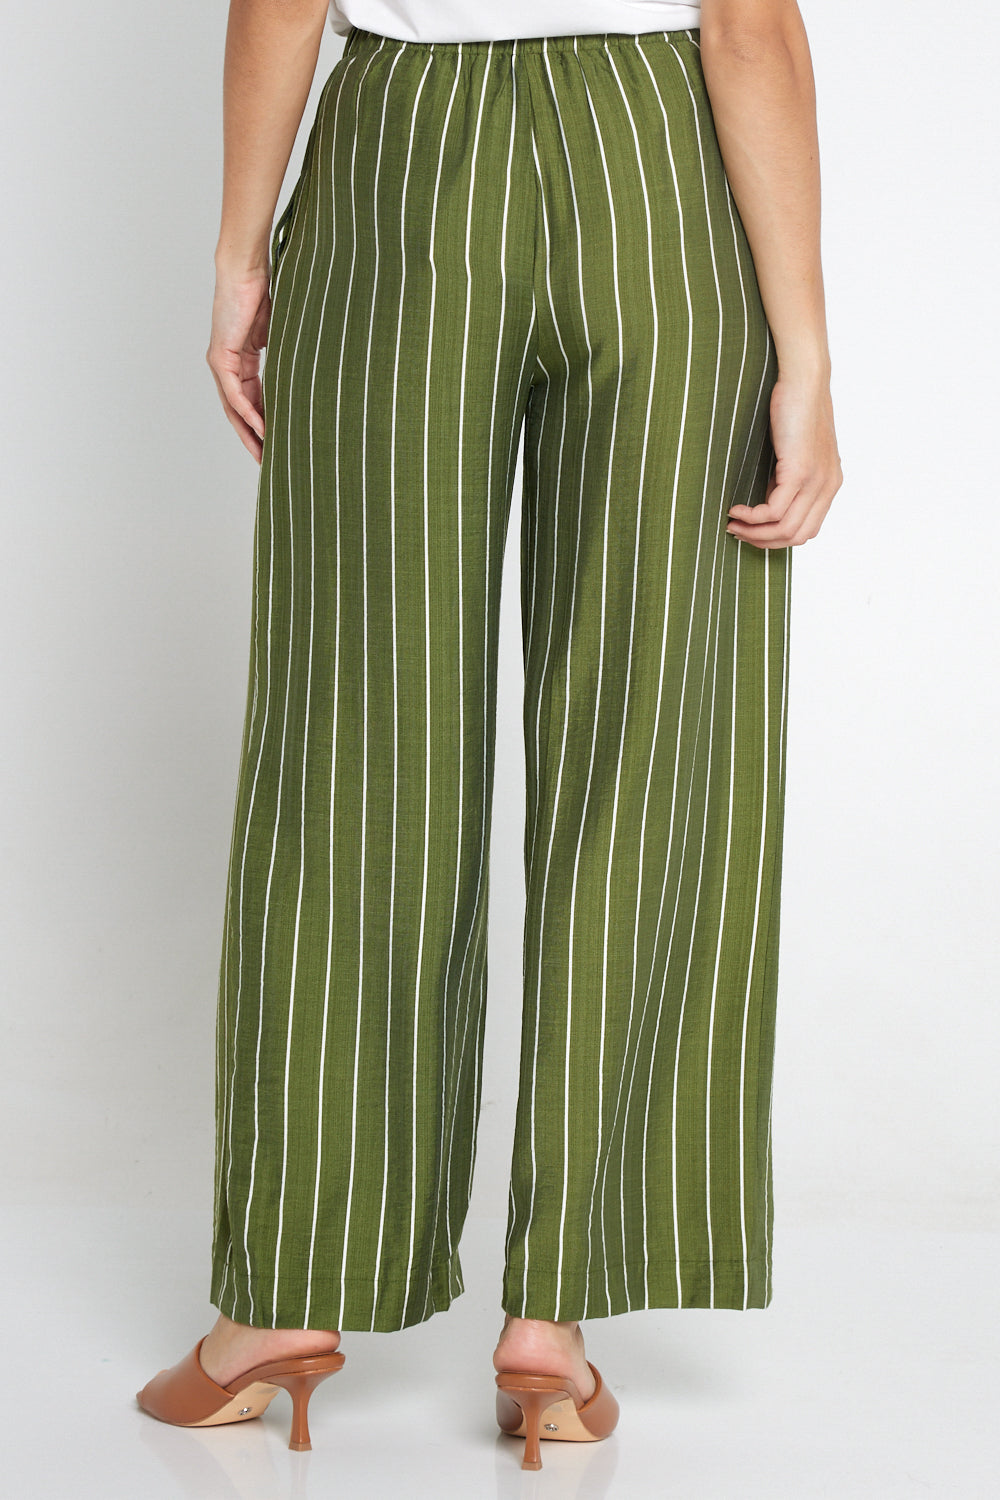 Neave Pants - Green/White Stripe